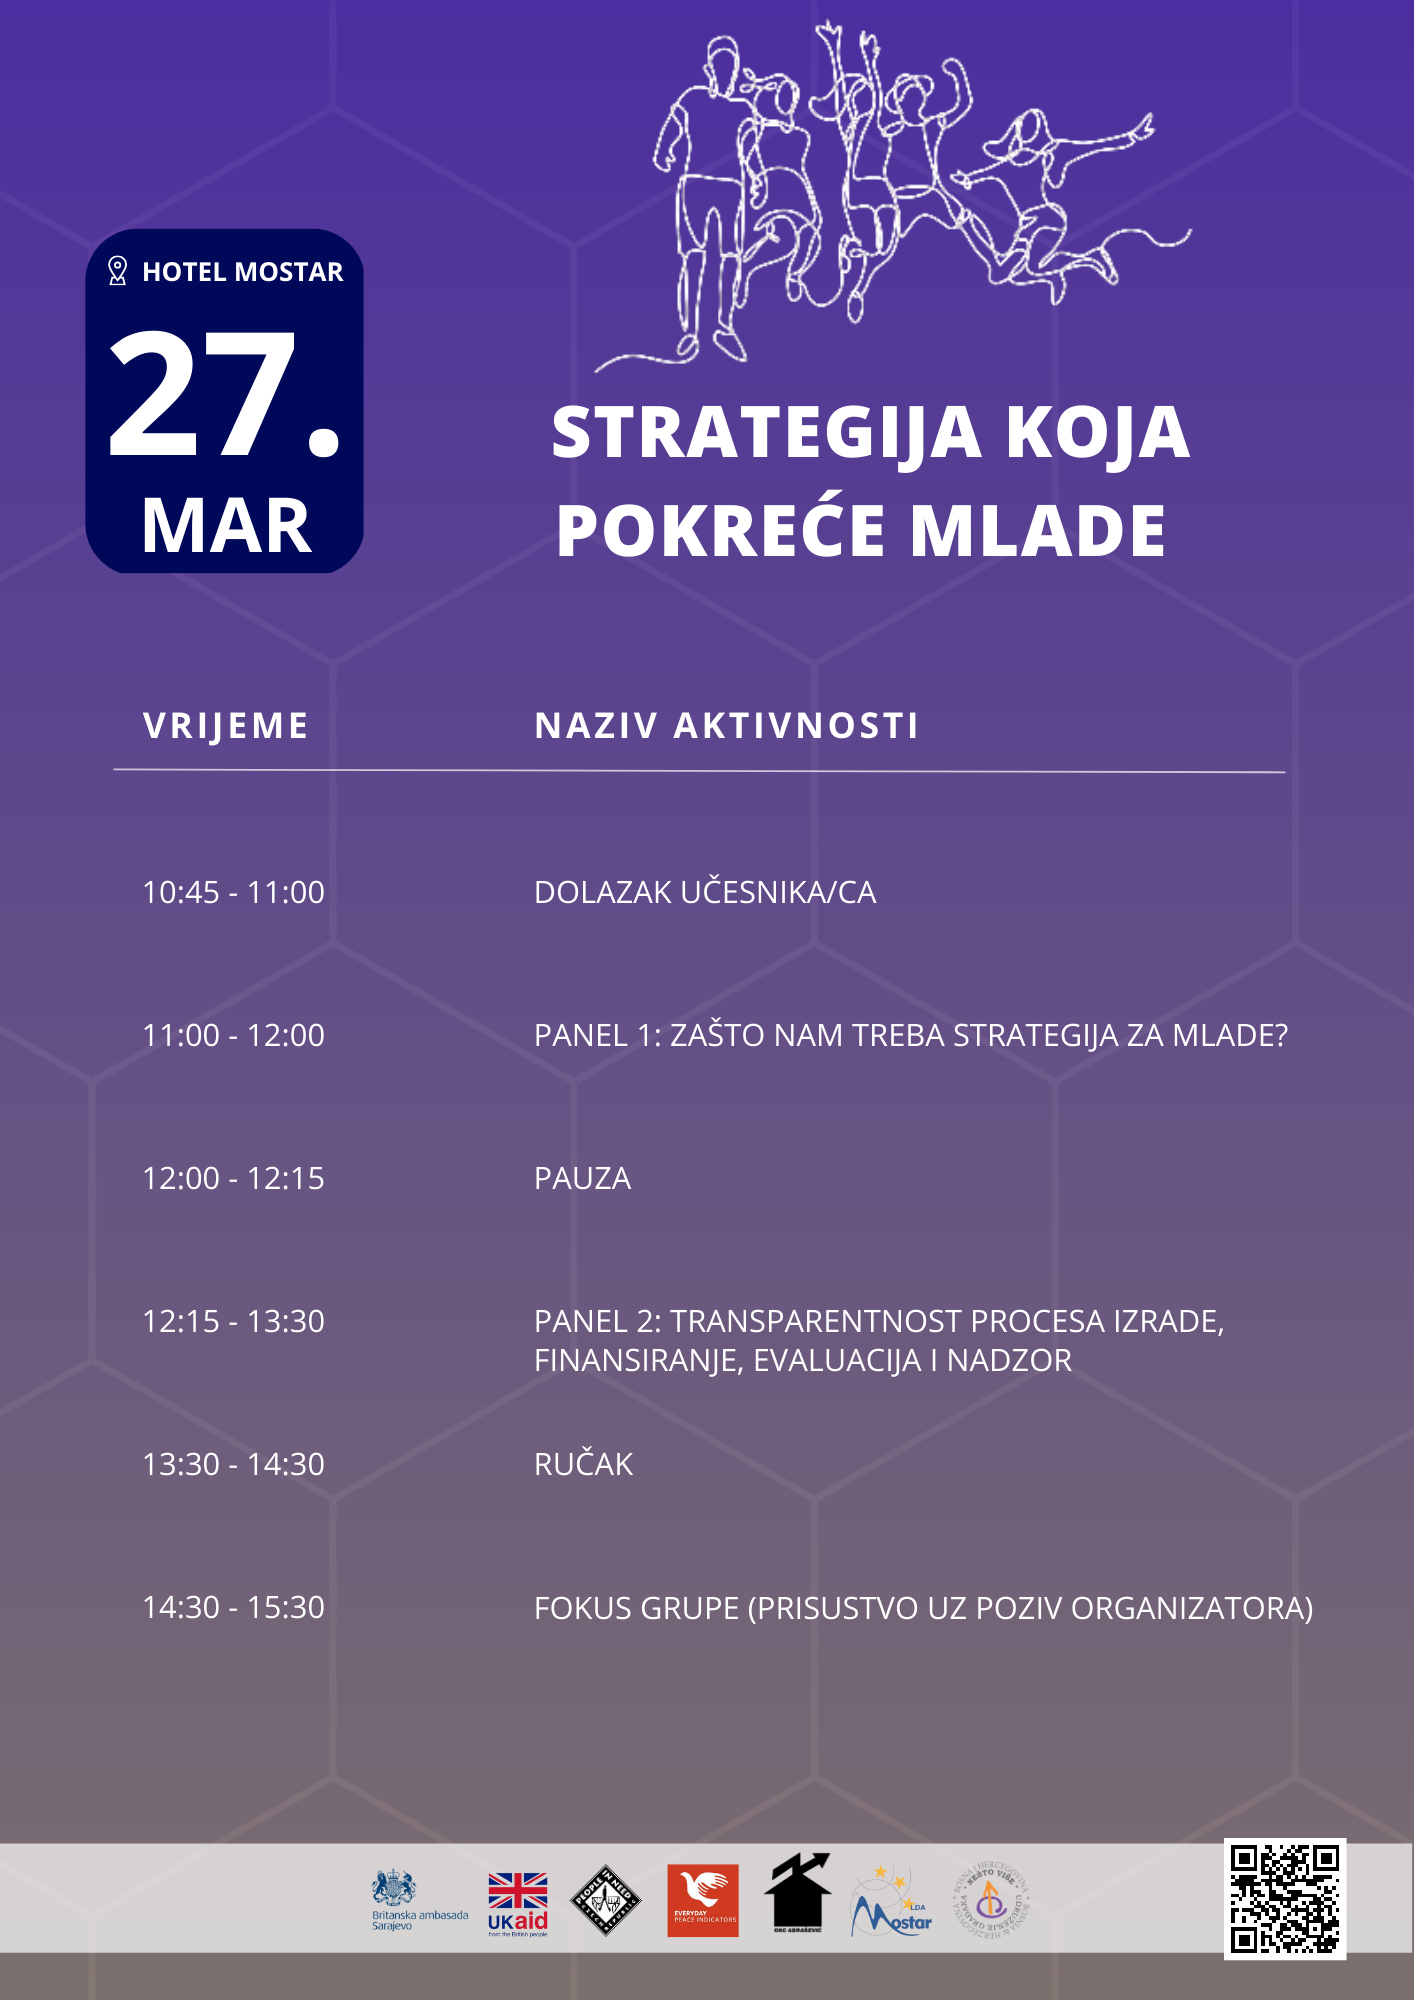 "Strategija koja pokreće mlade" u okviru projekta Mostar - Prostoriji koji pokreću